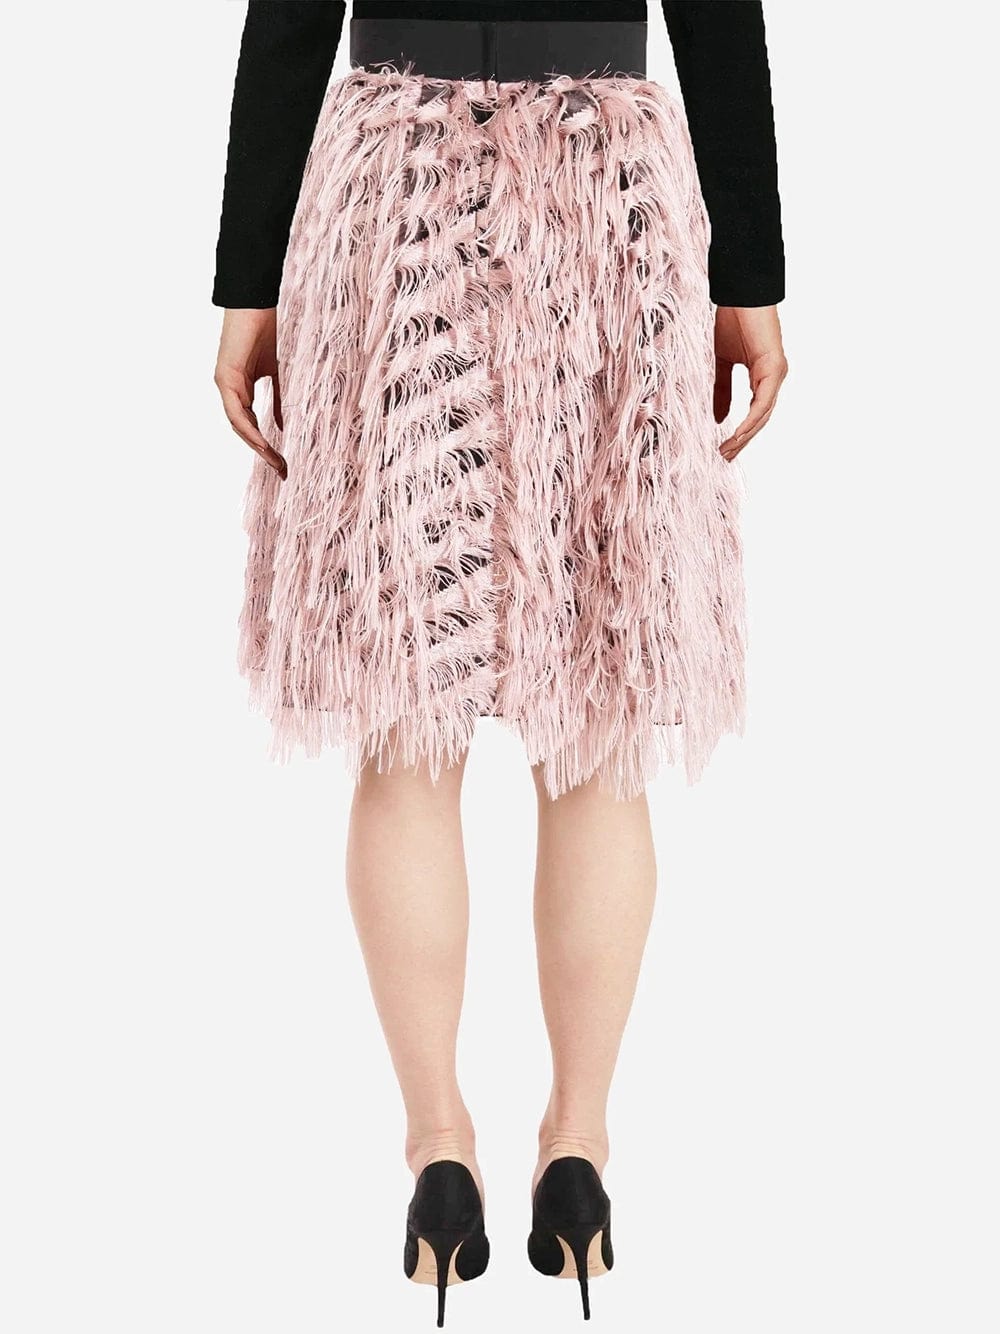 Dolce & Gabbana Metallic High-Waist Pencil Skirt